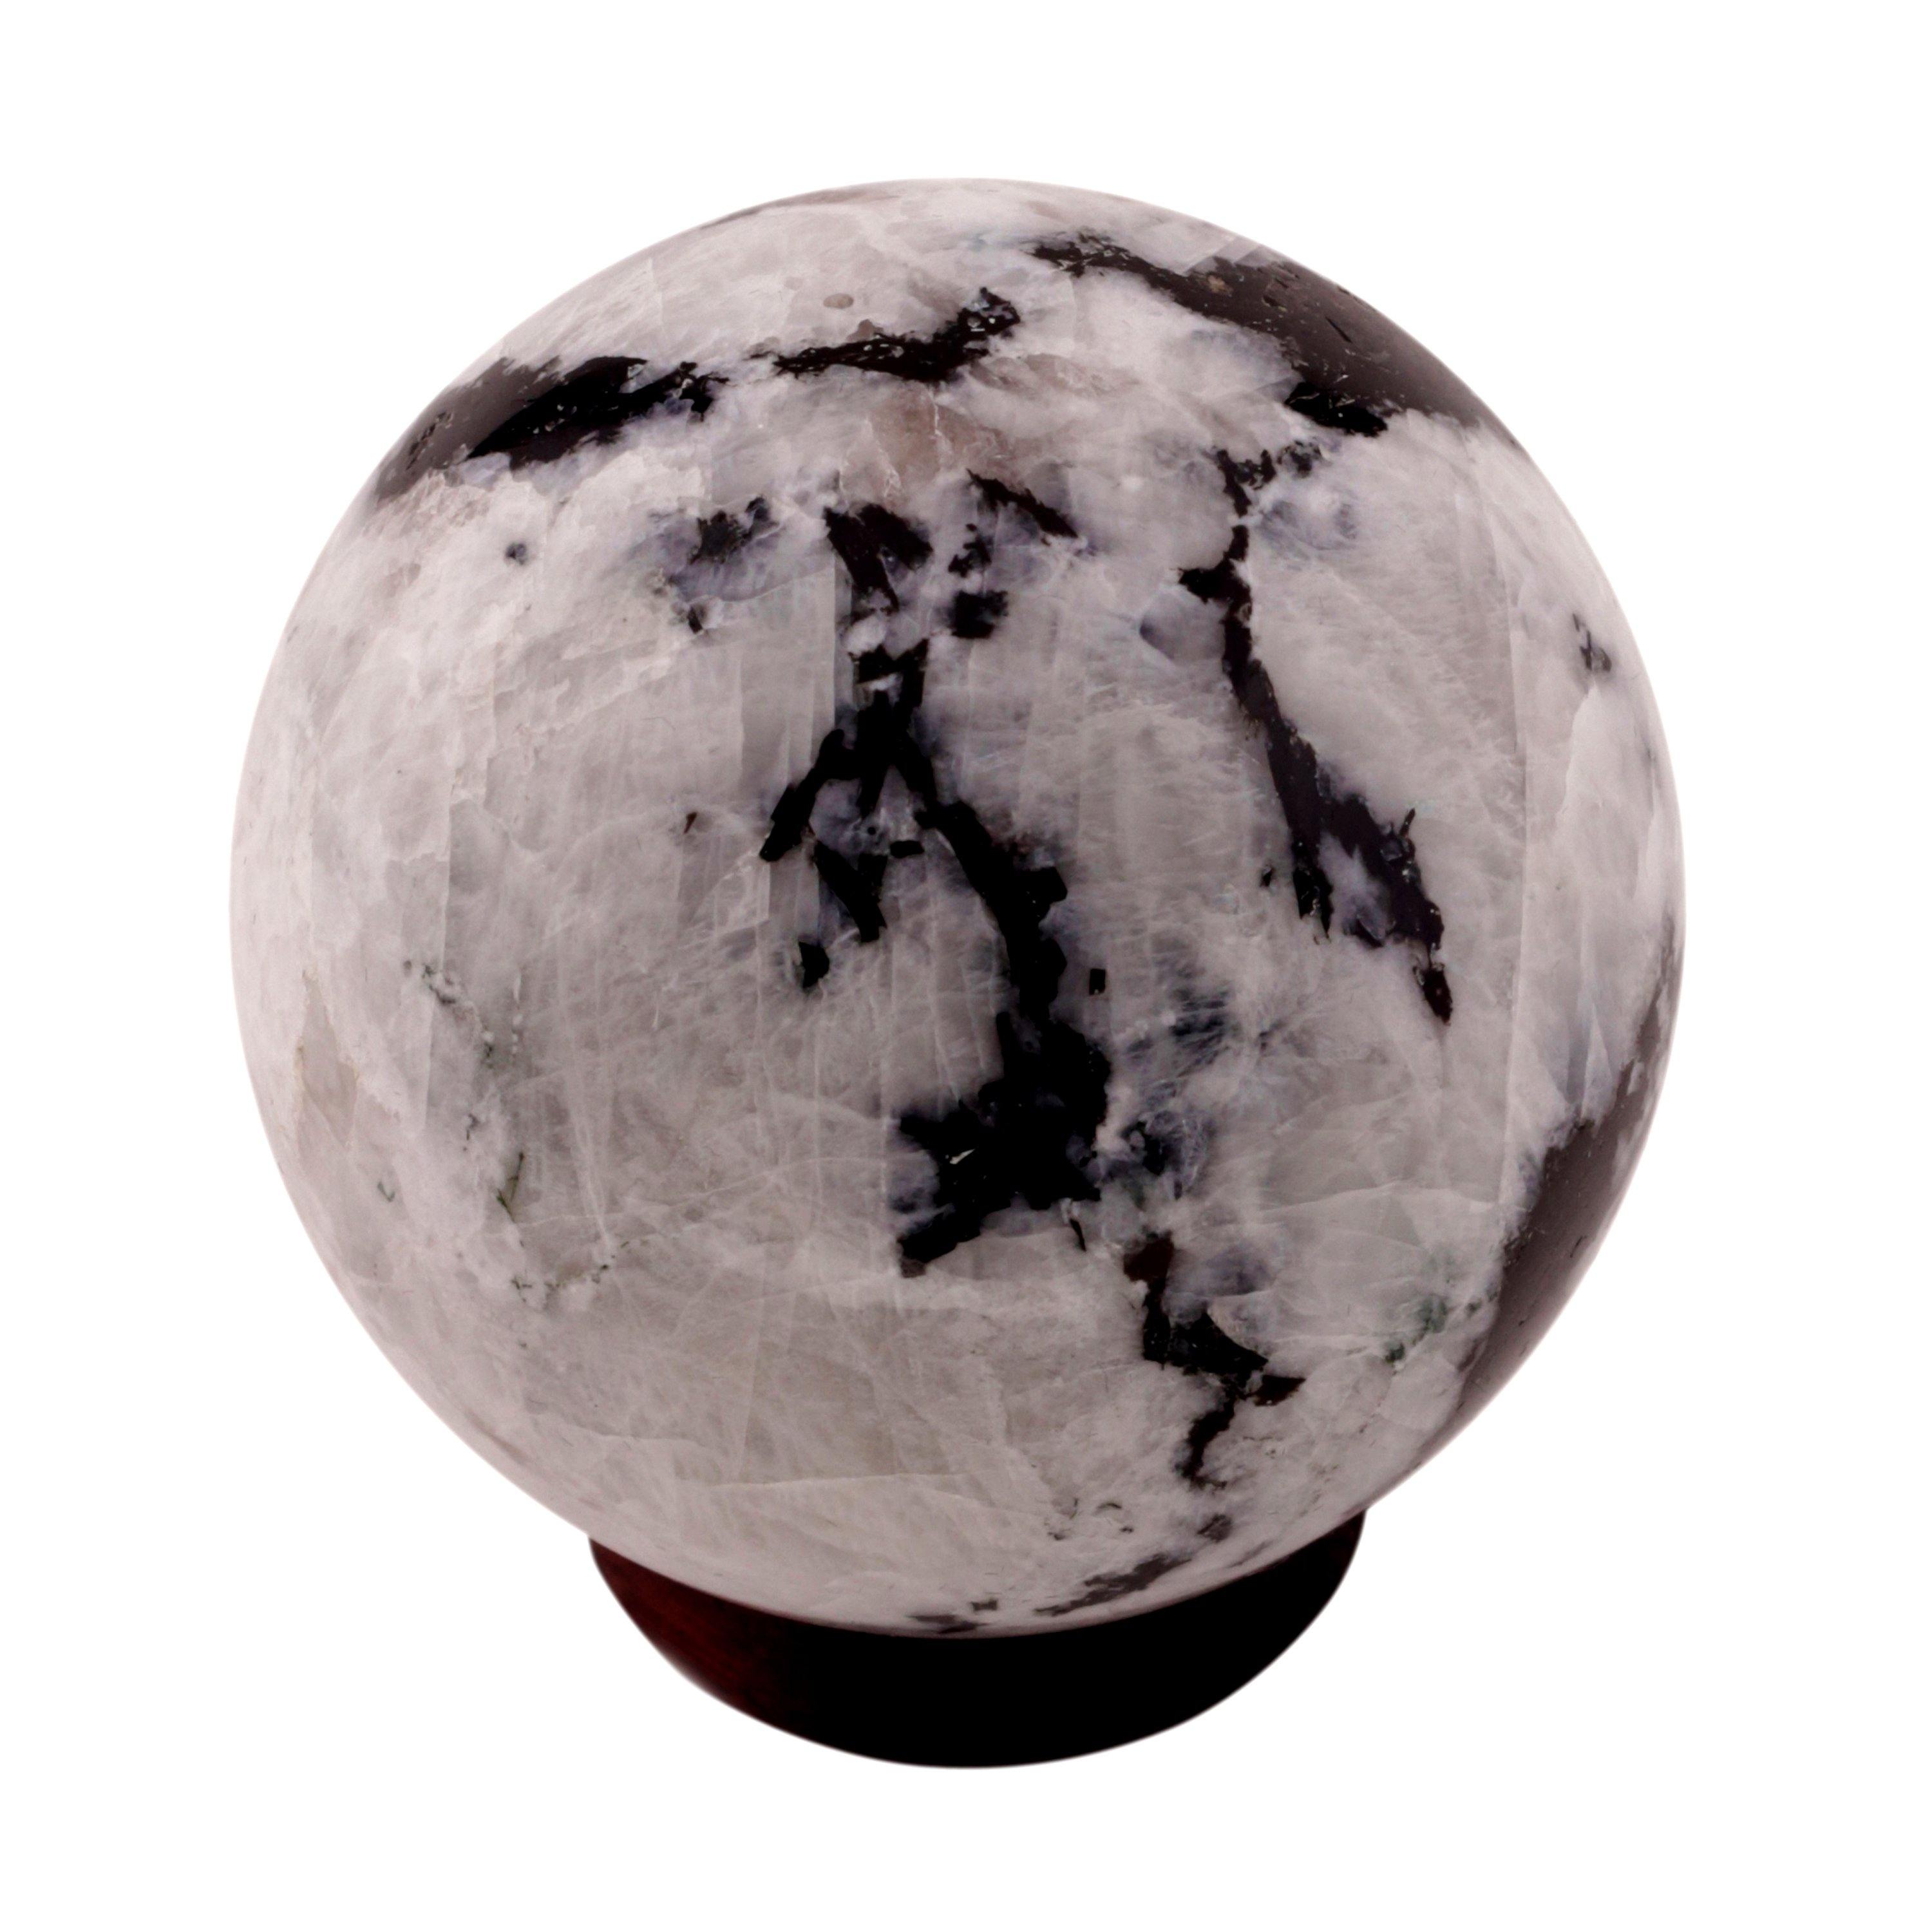 Healing Crystals - Rainbow Moonstone Sphere 1 Kg Lot